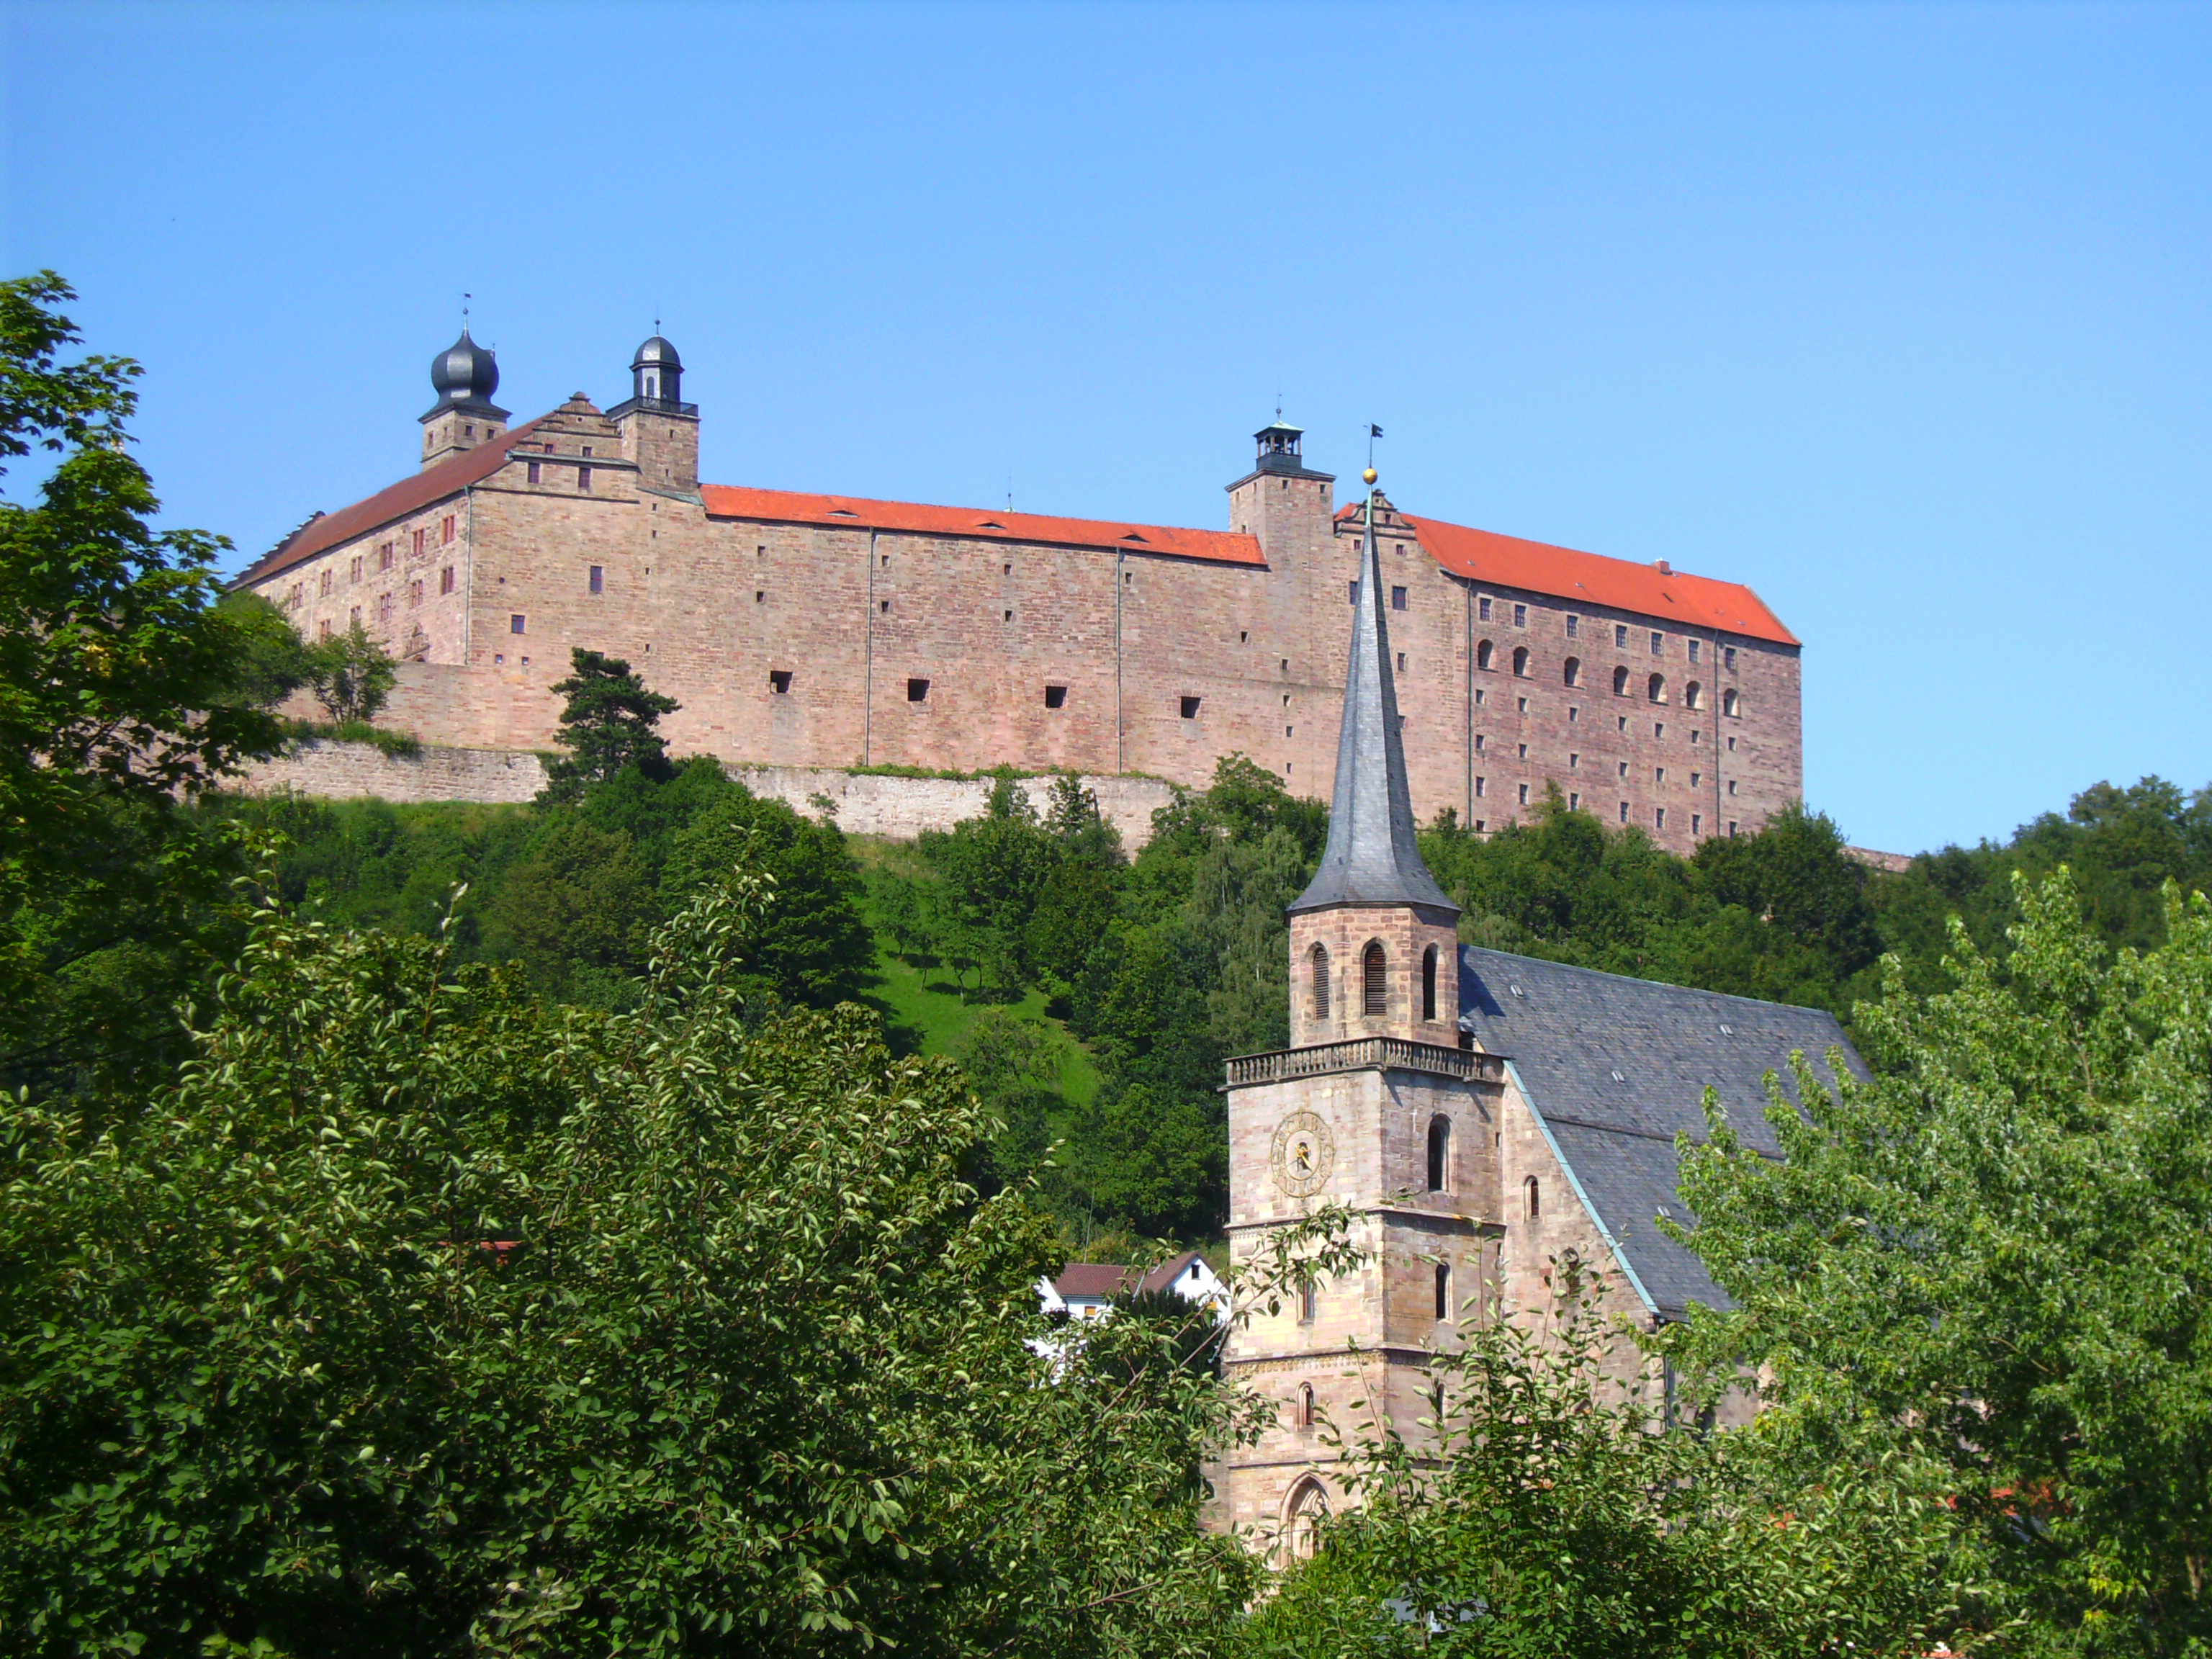 Die Plassenburg, Wahrzeichen der Stadt Kulmbach, und die spätgotische Kirche St. Petri.
